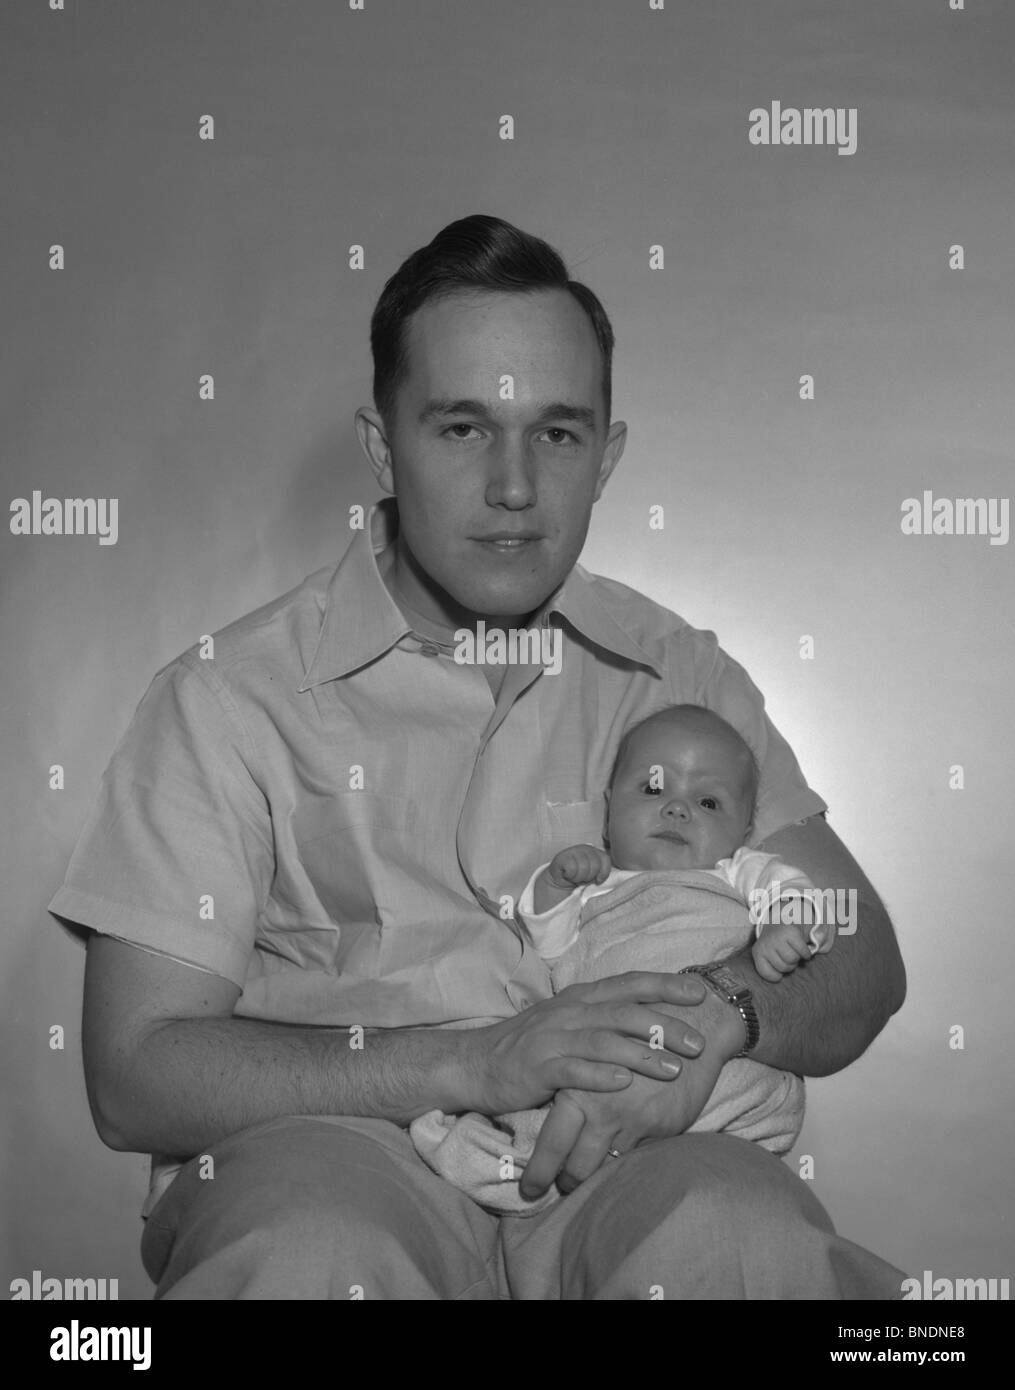 Portrait d'un père tenant son bébé Banque D'Images